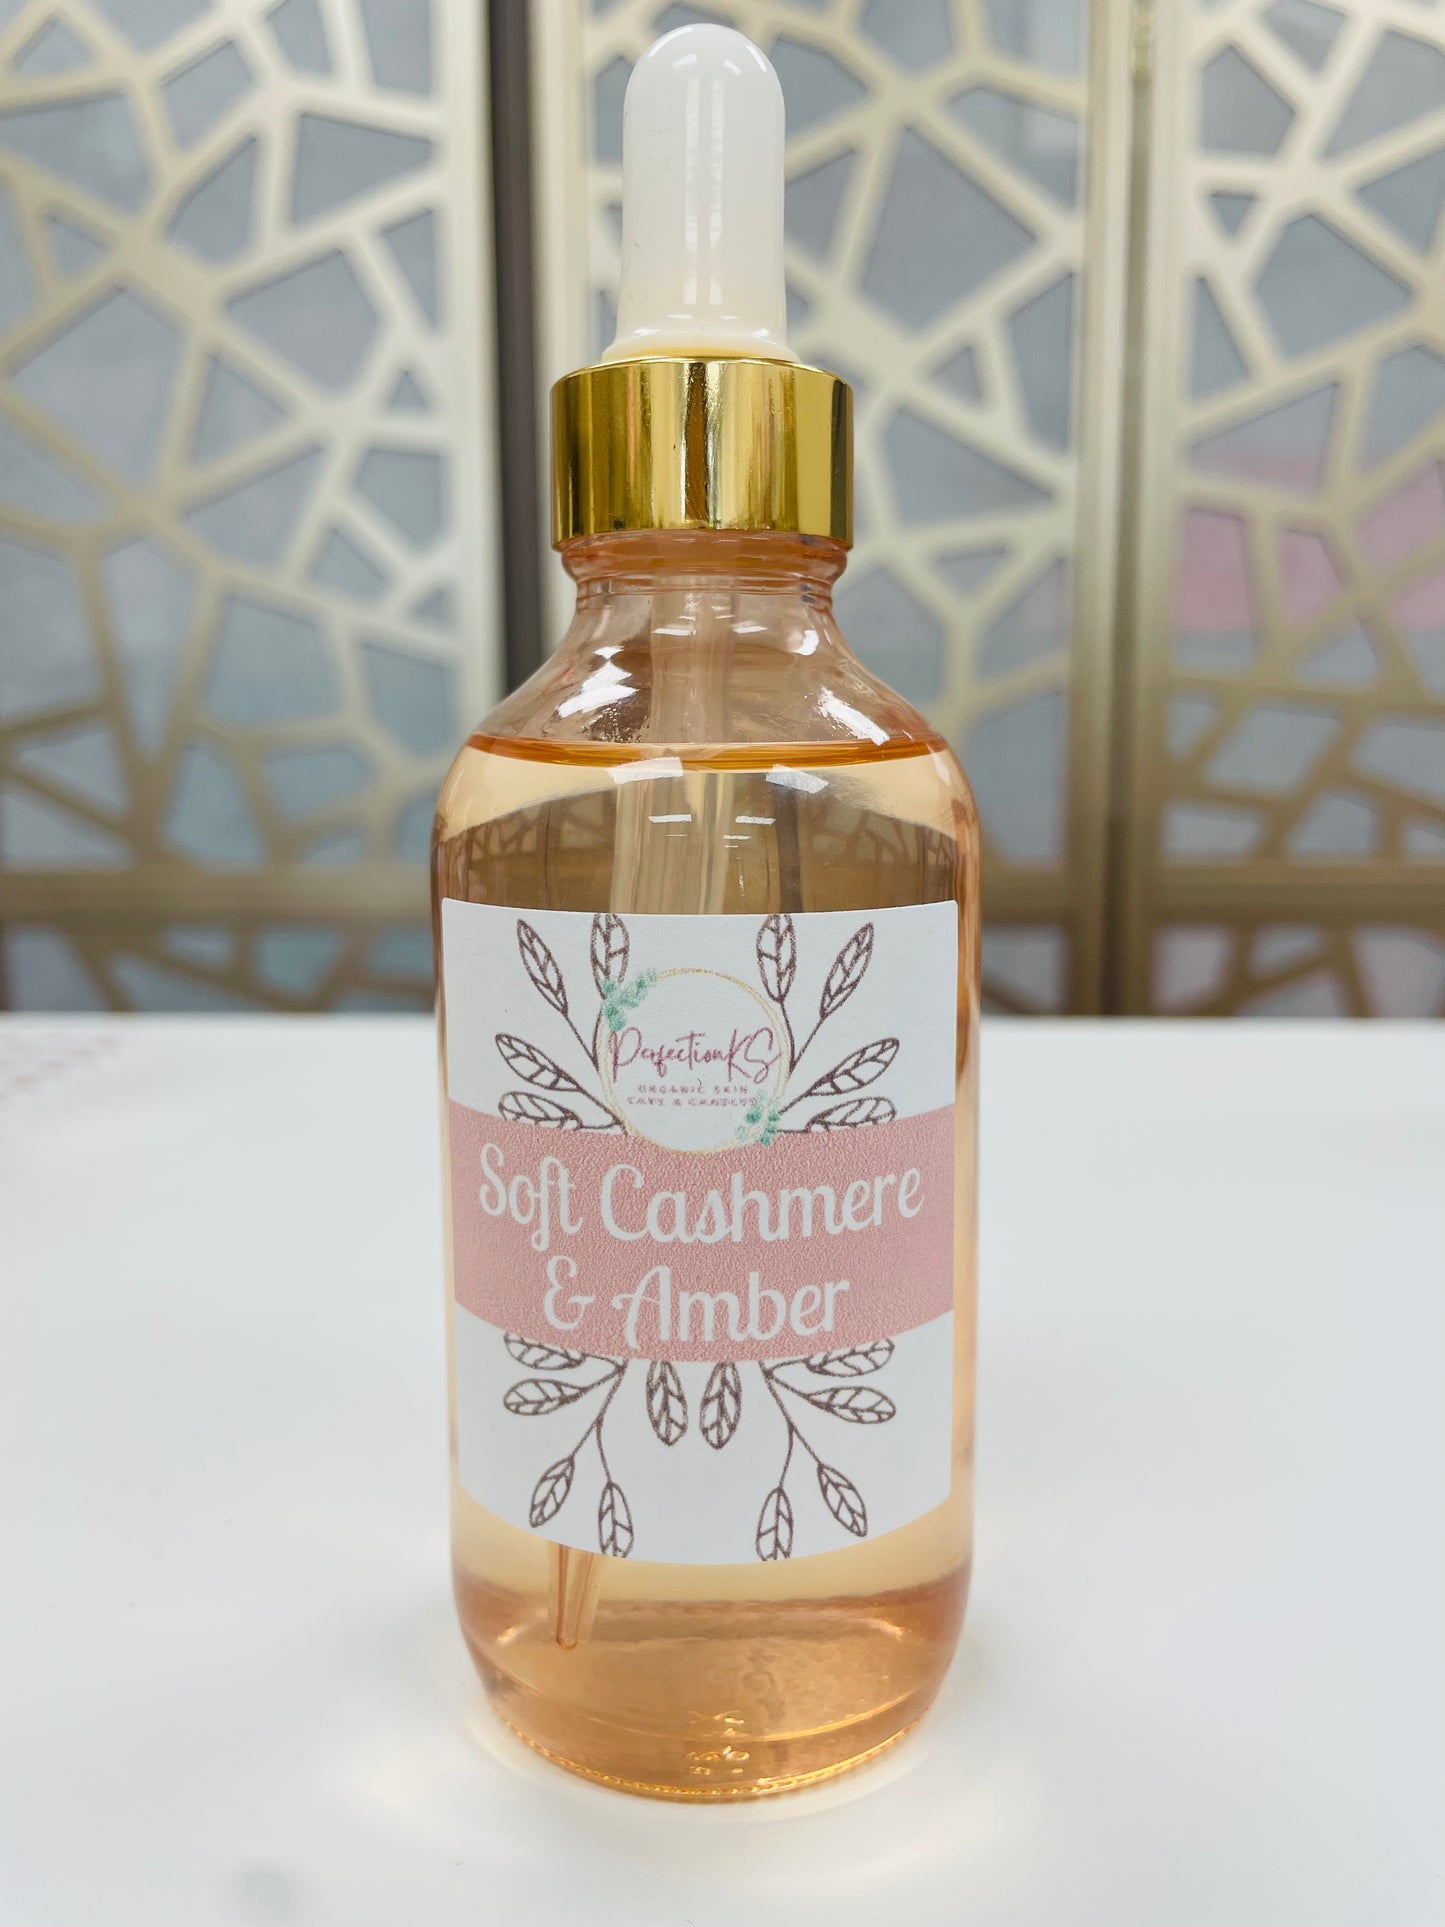 Soft Cashmere & Amber Diffuser Oil